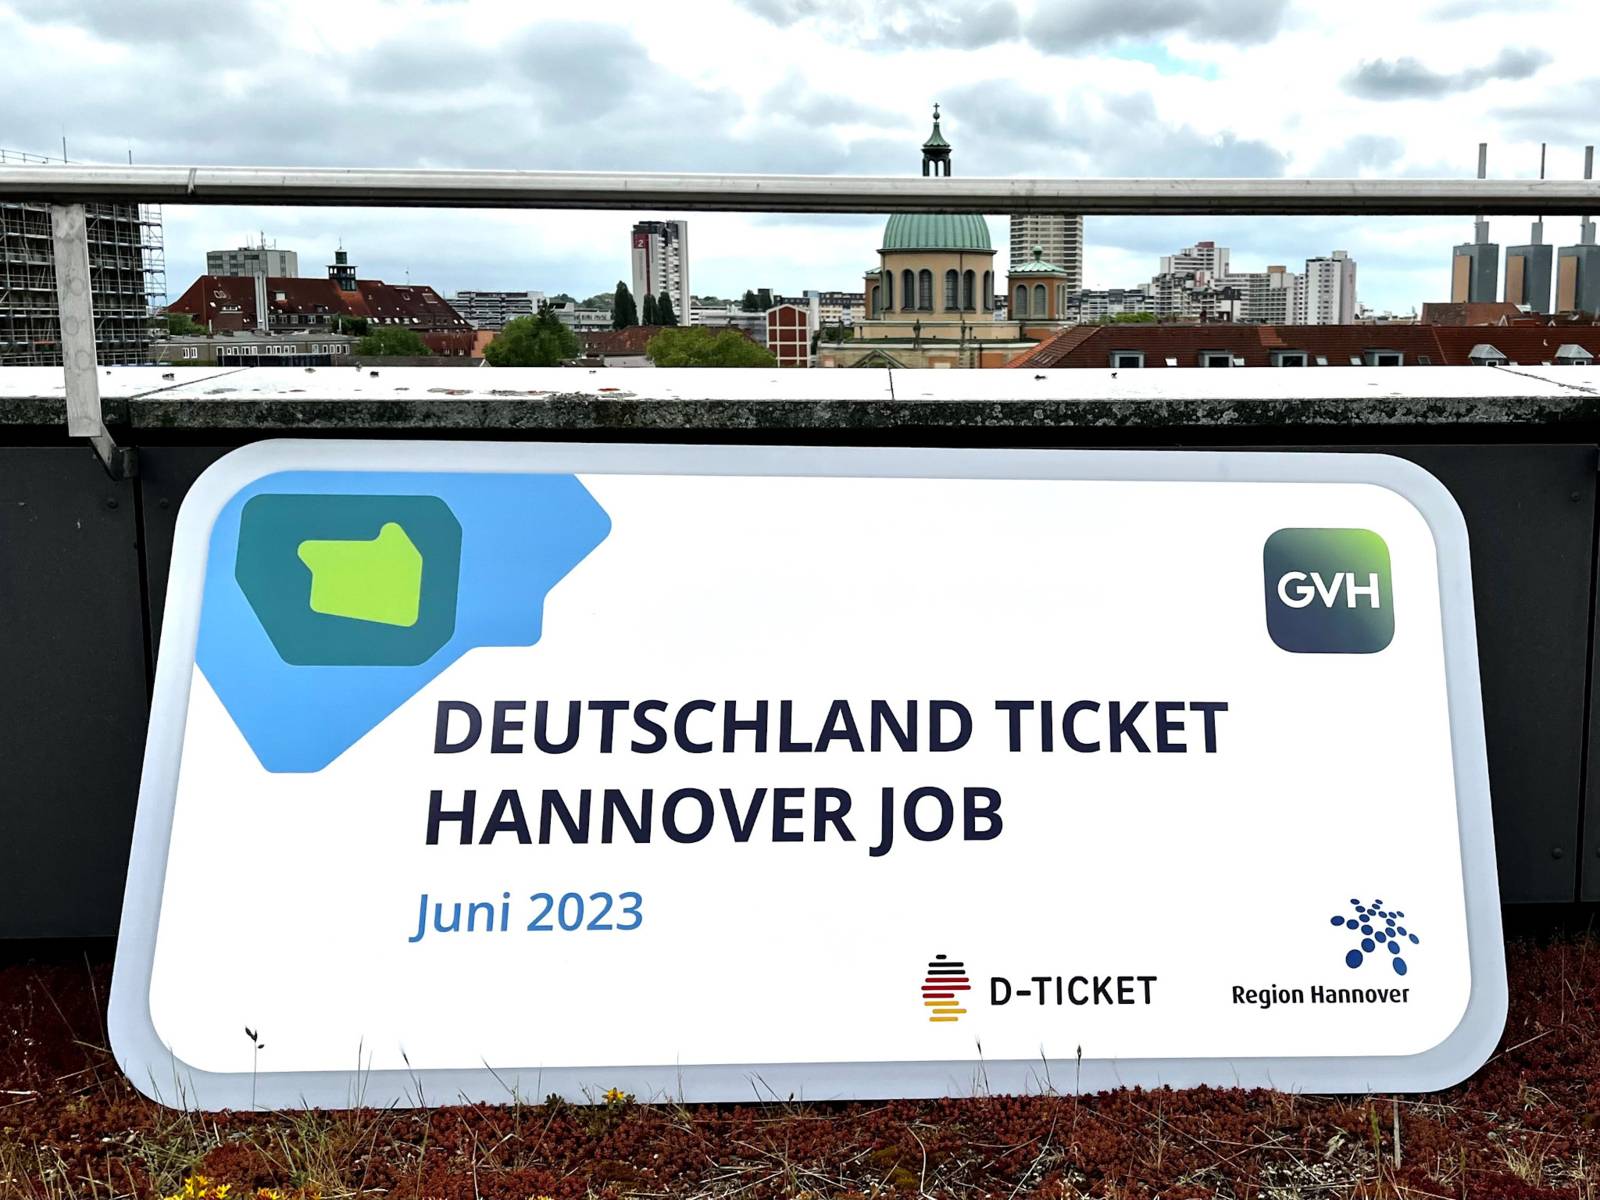 Ein überdimensionales Exemplar des GVH Deutschland Ticket Hannover Job.